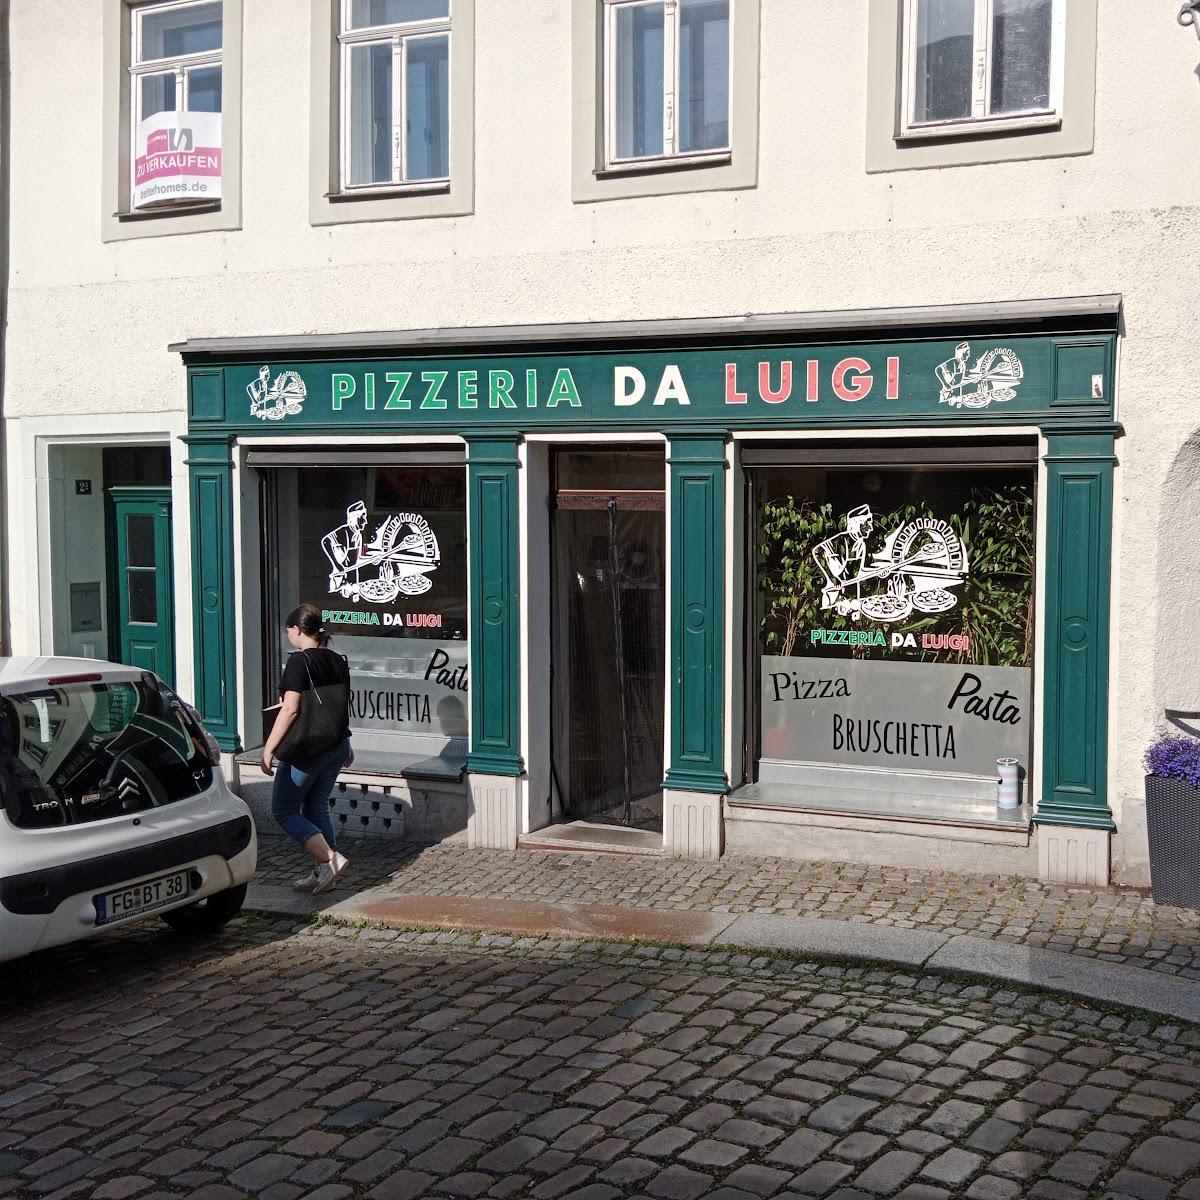 Restaurant "Pizzeria Da Luigi" in Hainichen